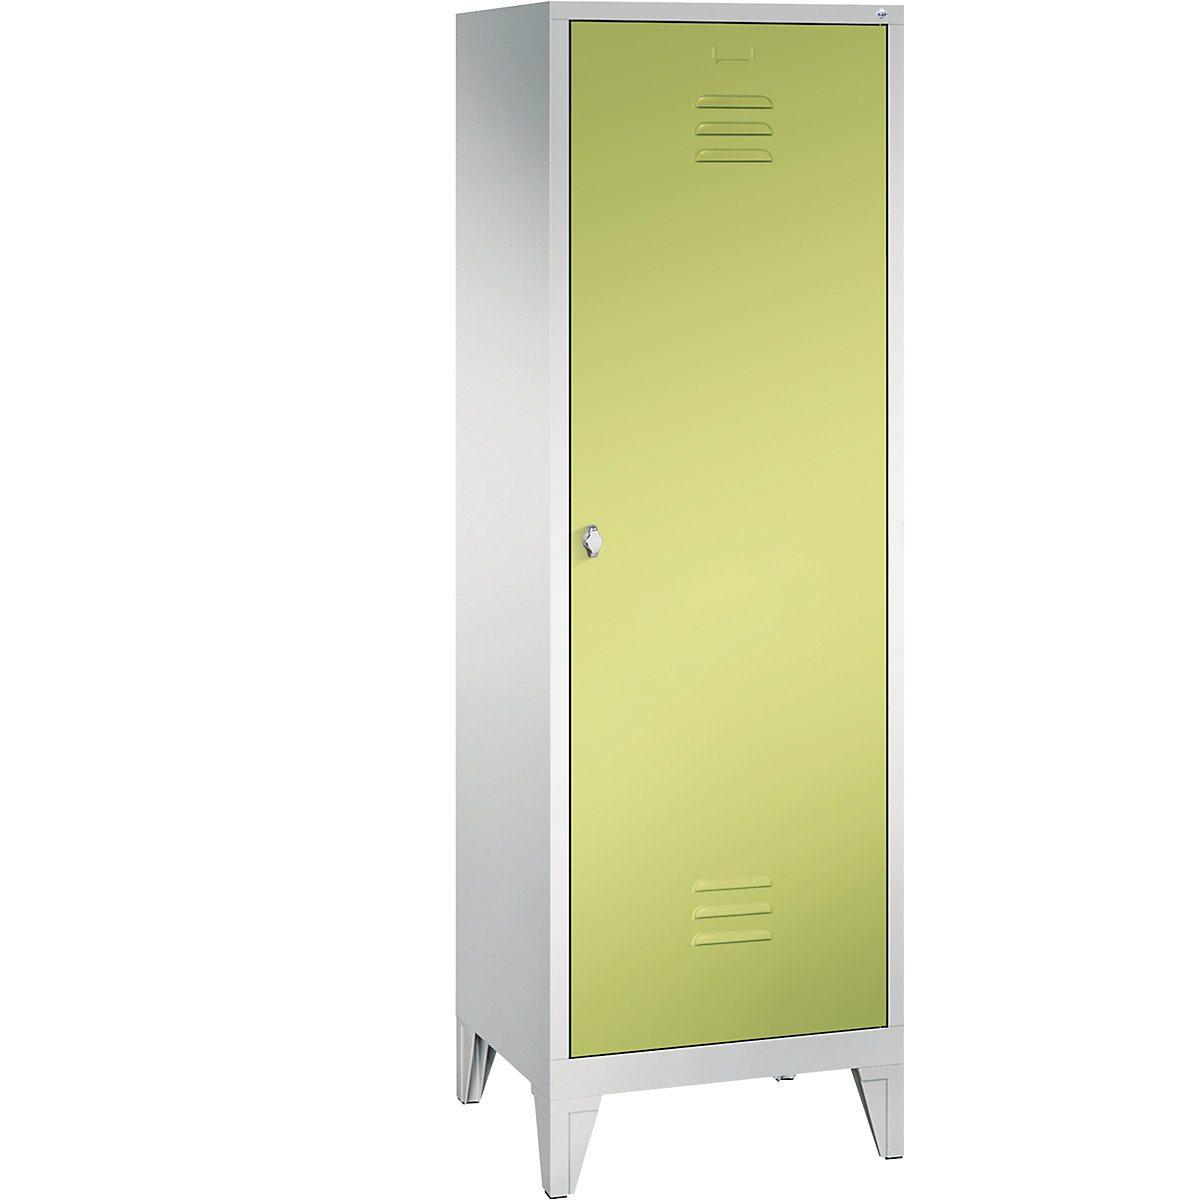 C+P CLASSIC Garderobenschrank mit Füßen, Tür über 2 Abteile, 2 Abteile, Abteilbreite 300 mm, lichtgrau / viridingrün